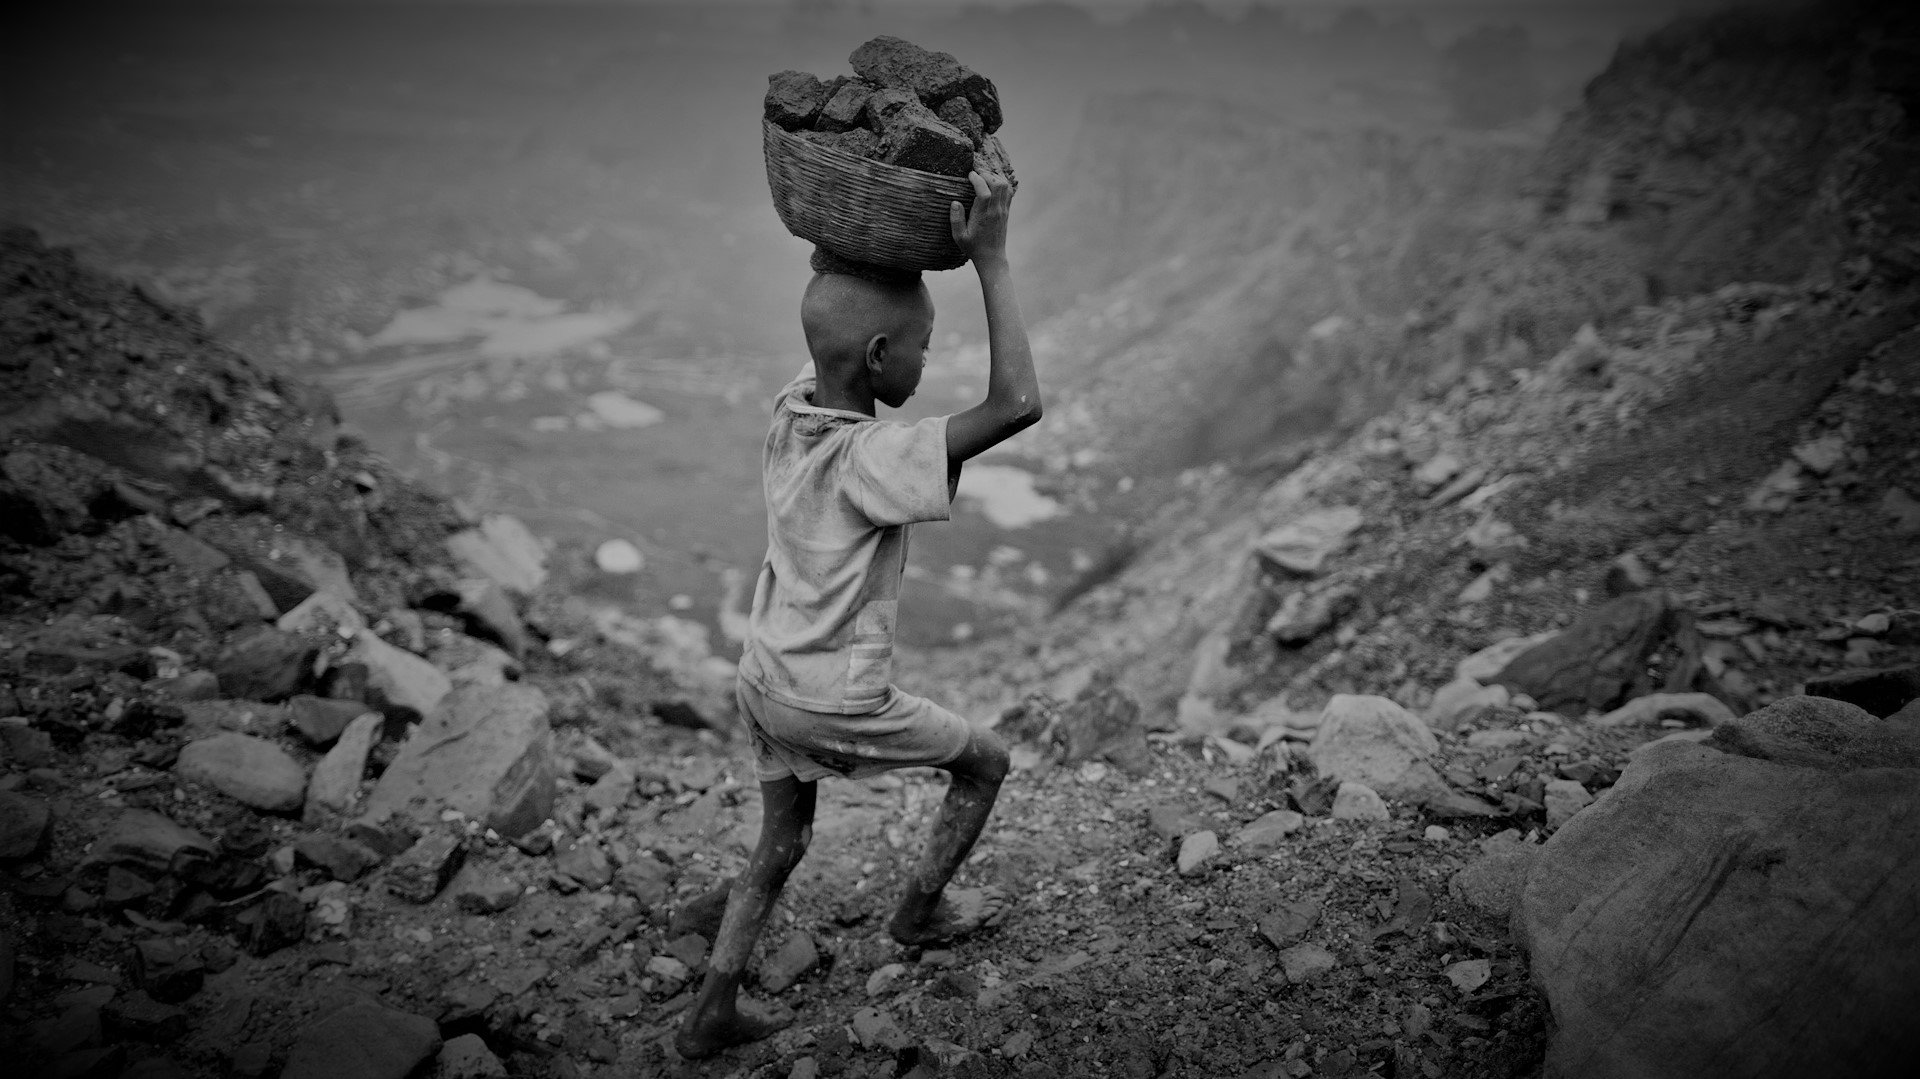 Crece el trabajo infantil en el mundo: ¿Es culpa del capitalismo o del COVID-19?